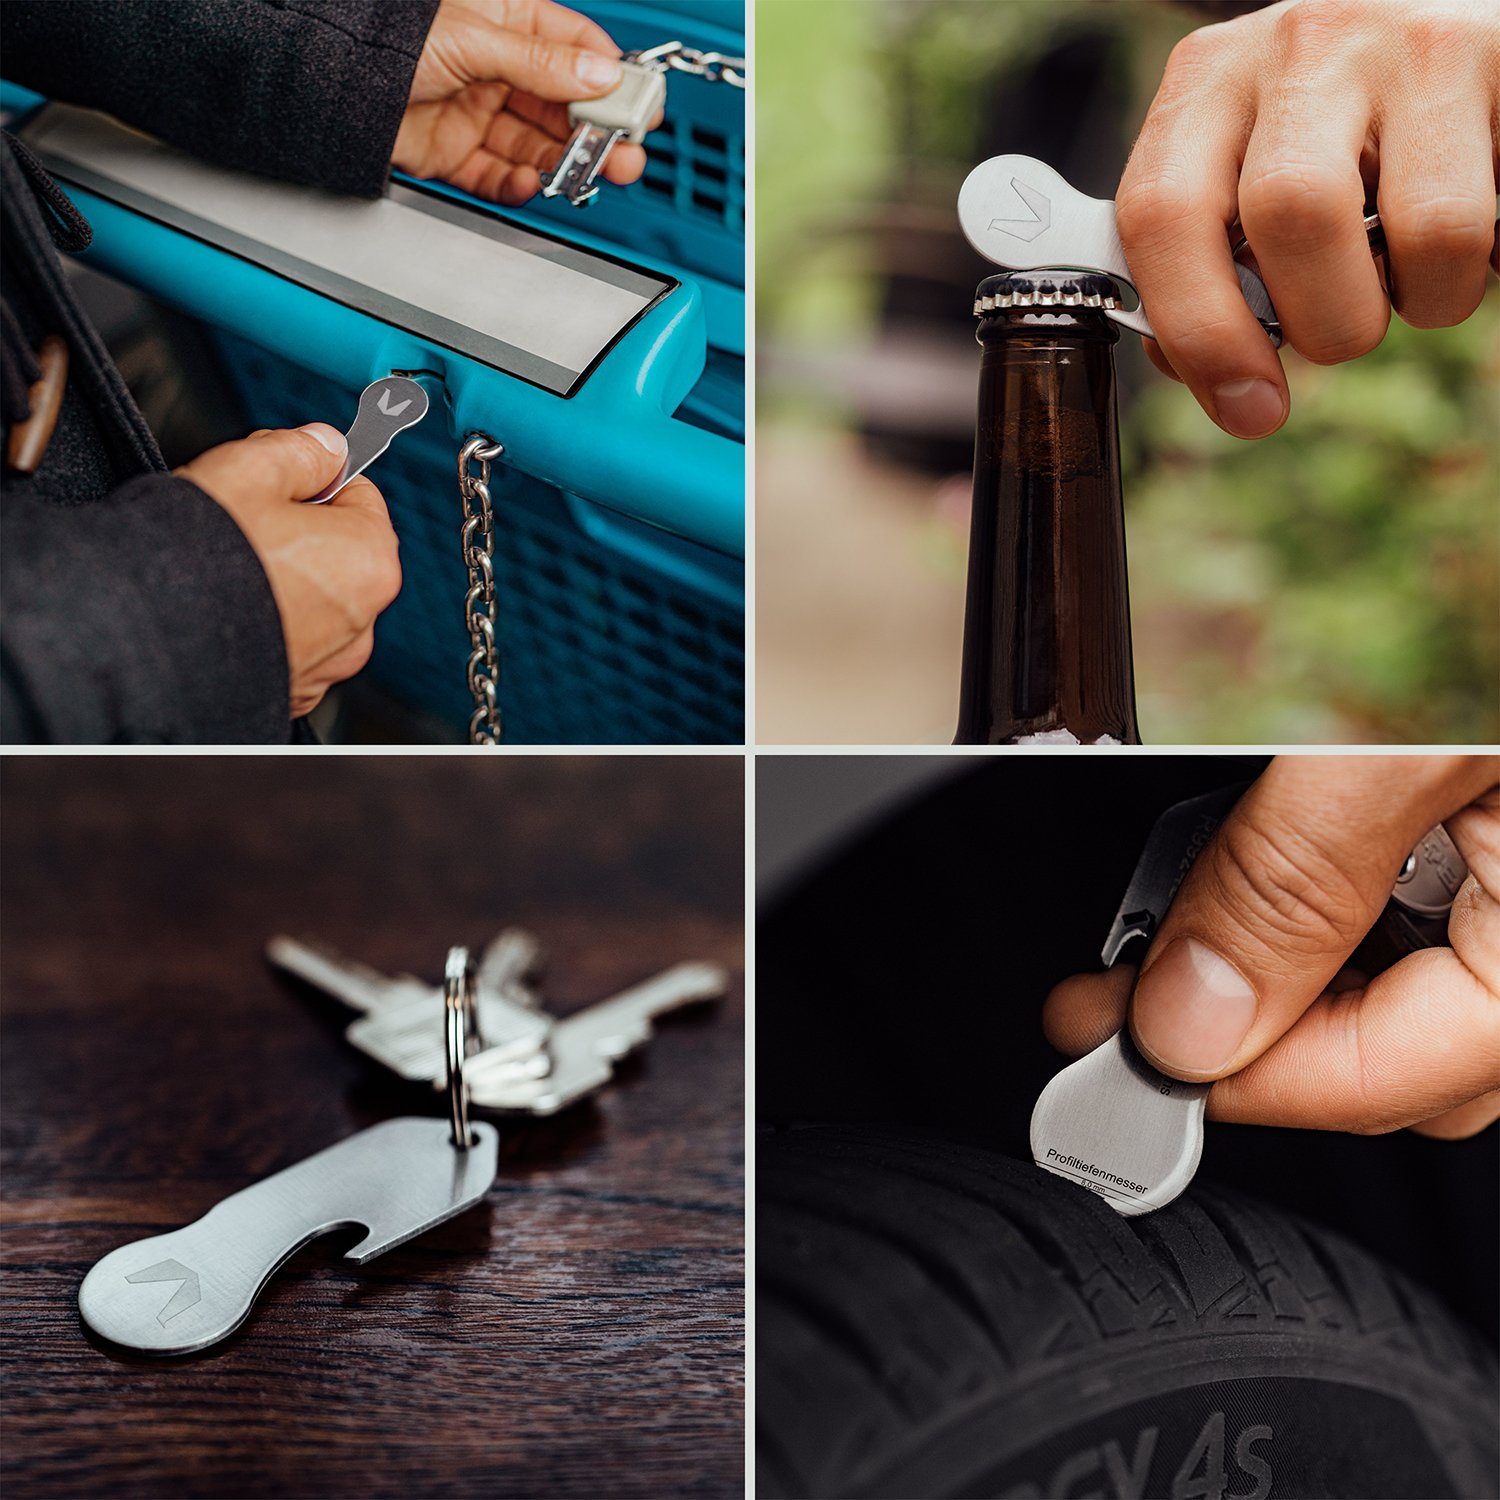 Schlüsseletui Vintage Schlüssel Geschenkbox, mit aus Profiltiefenmesser), Holder Einkaufswagenlöser, Organizer 1-7 (Inkl. für & Damen Herren Schlüsseltasche Schlüsselfundservice Braun MAGATI Flaschenöffner, für Echtleder, Key Key